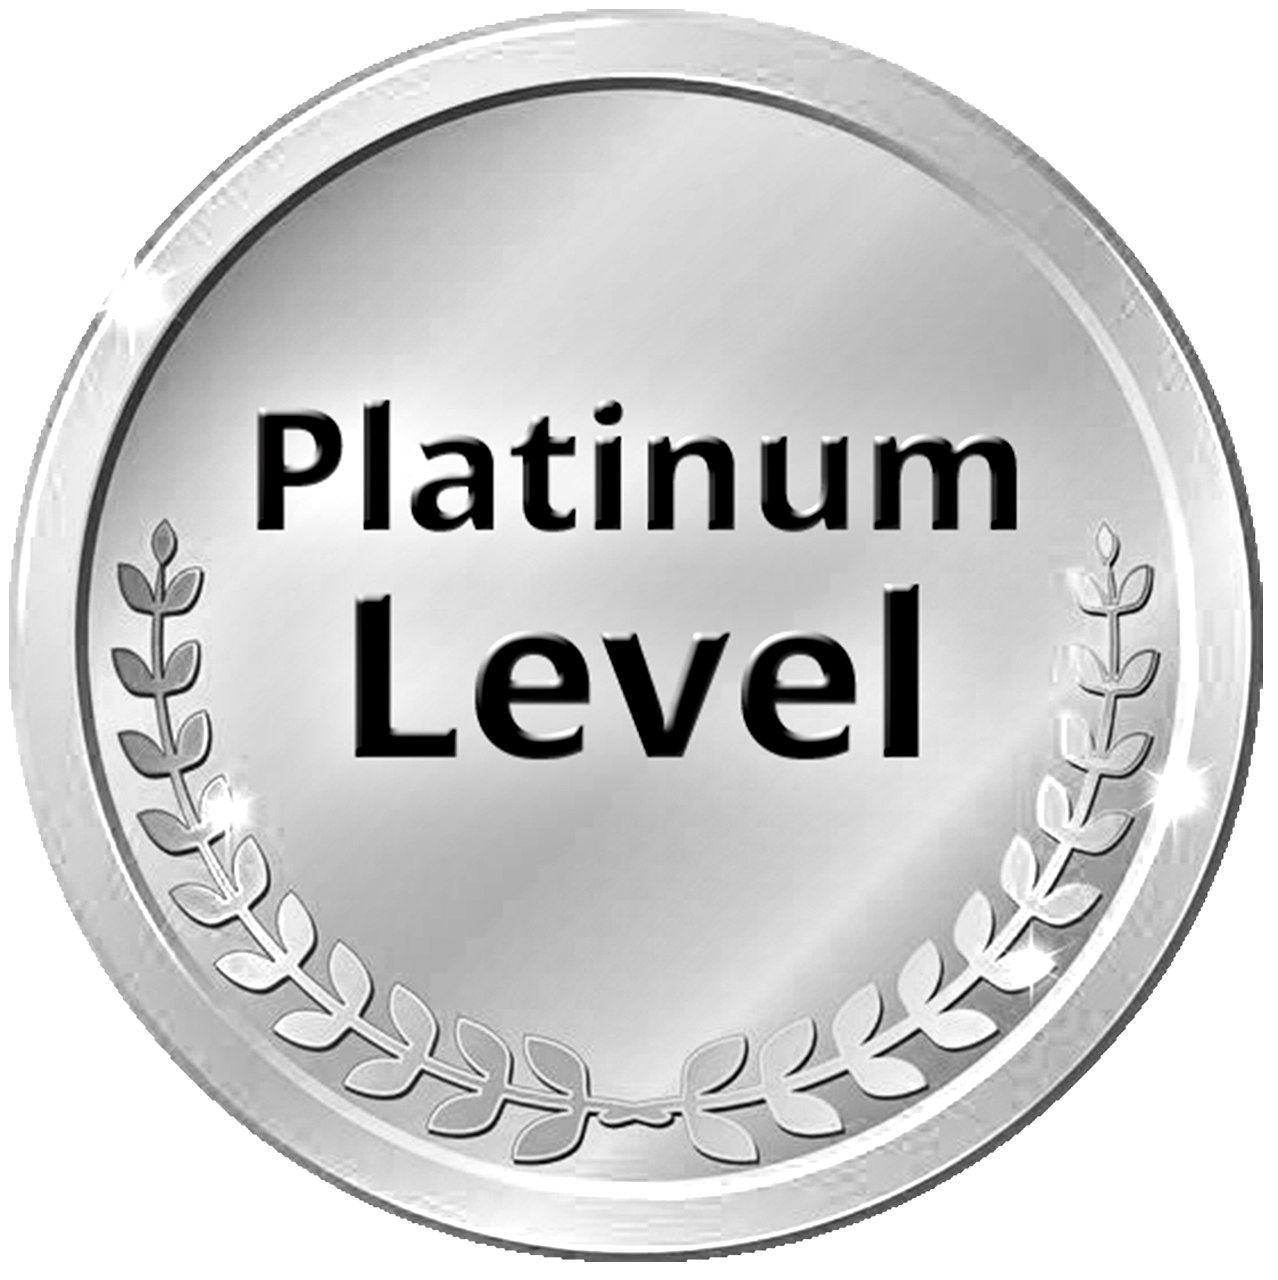 Platinum Level Donation